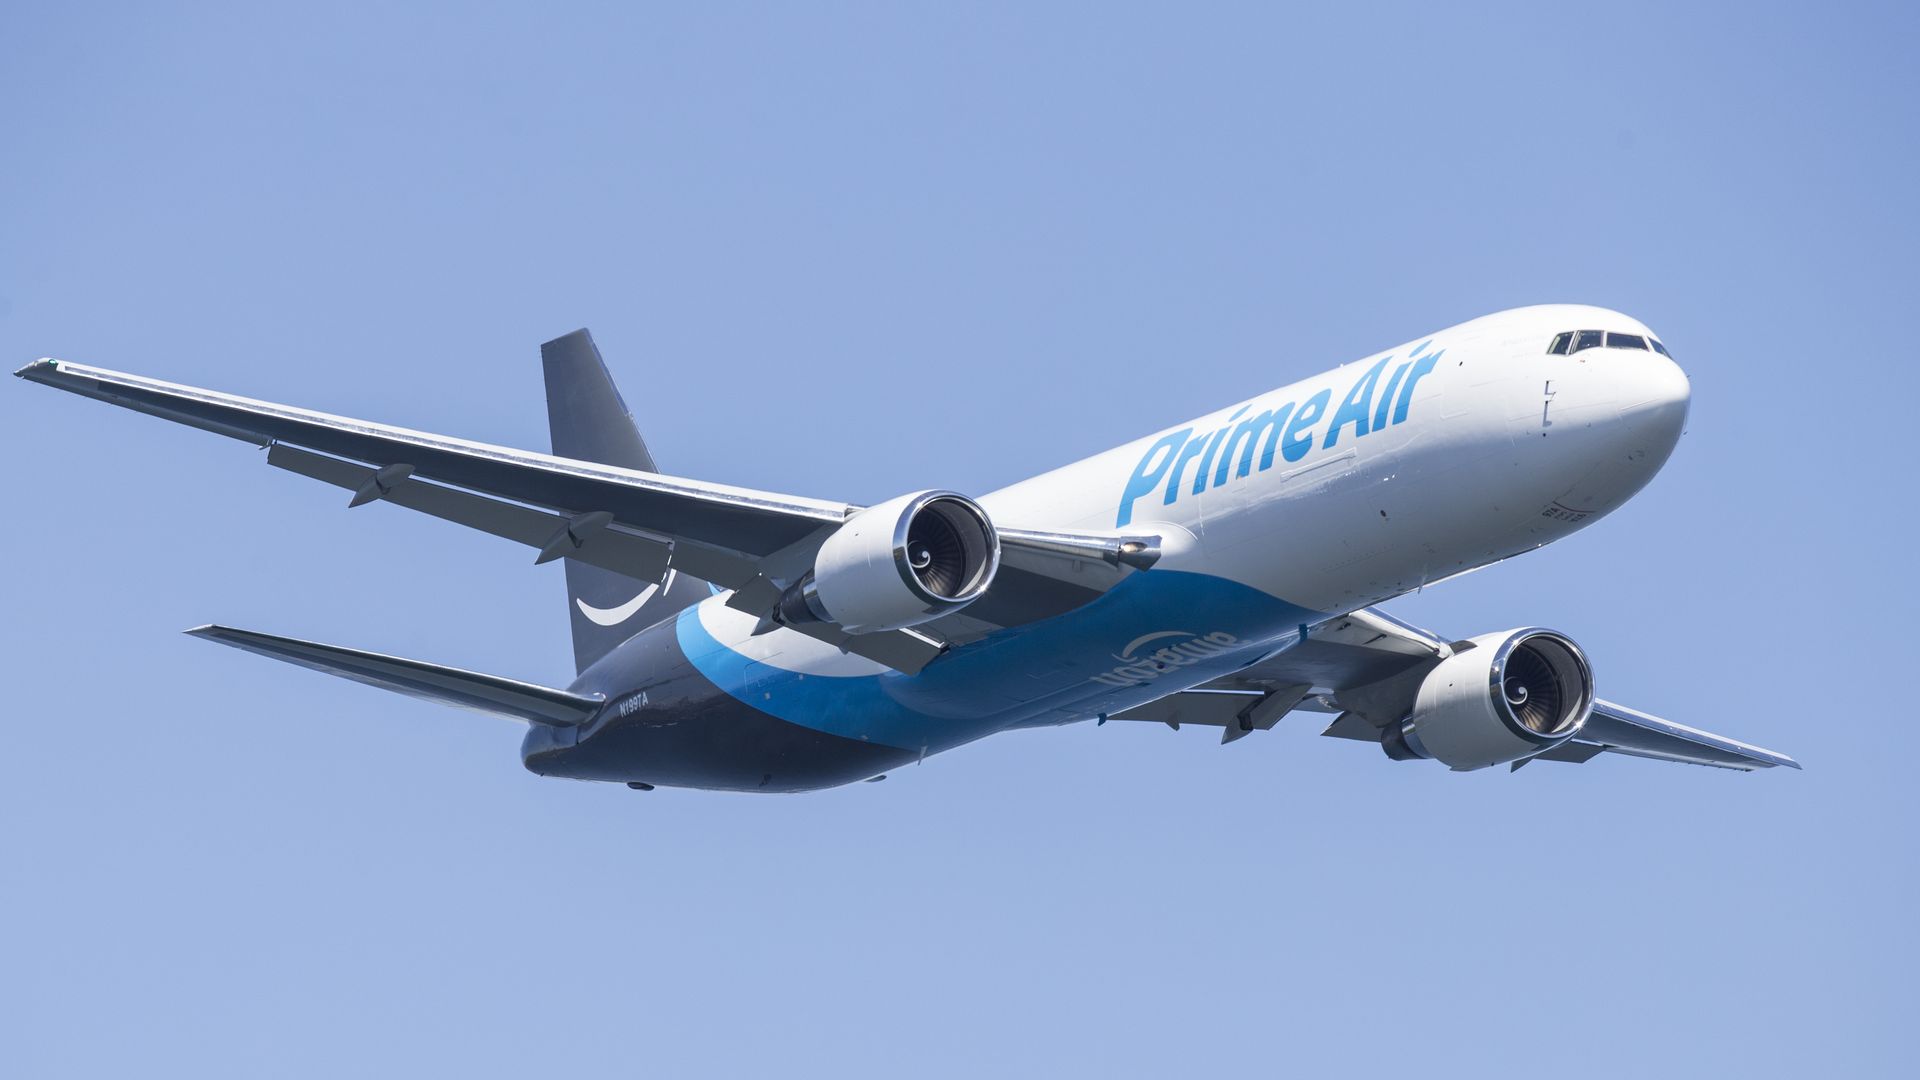 Prime Air–branded airplane